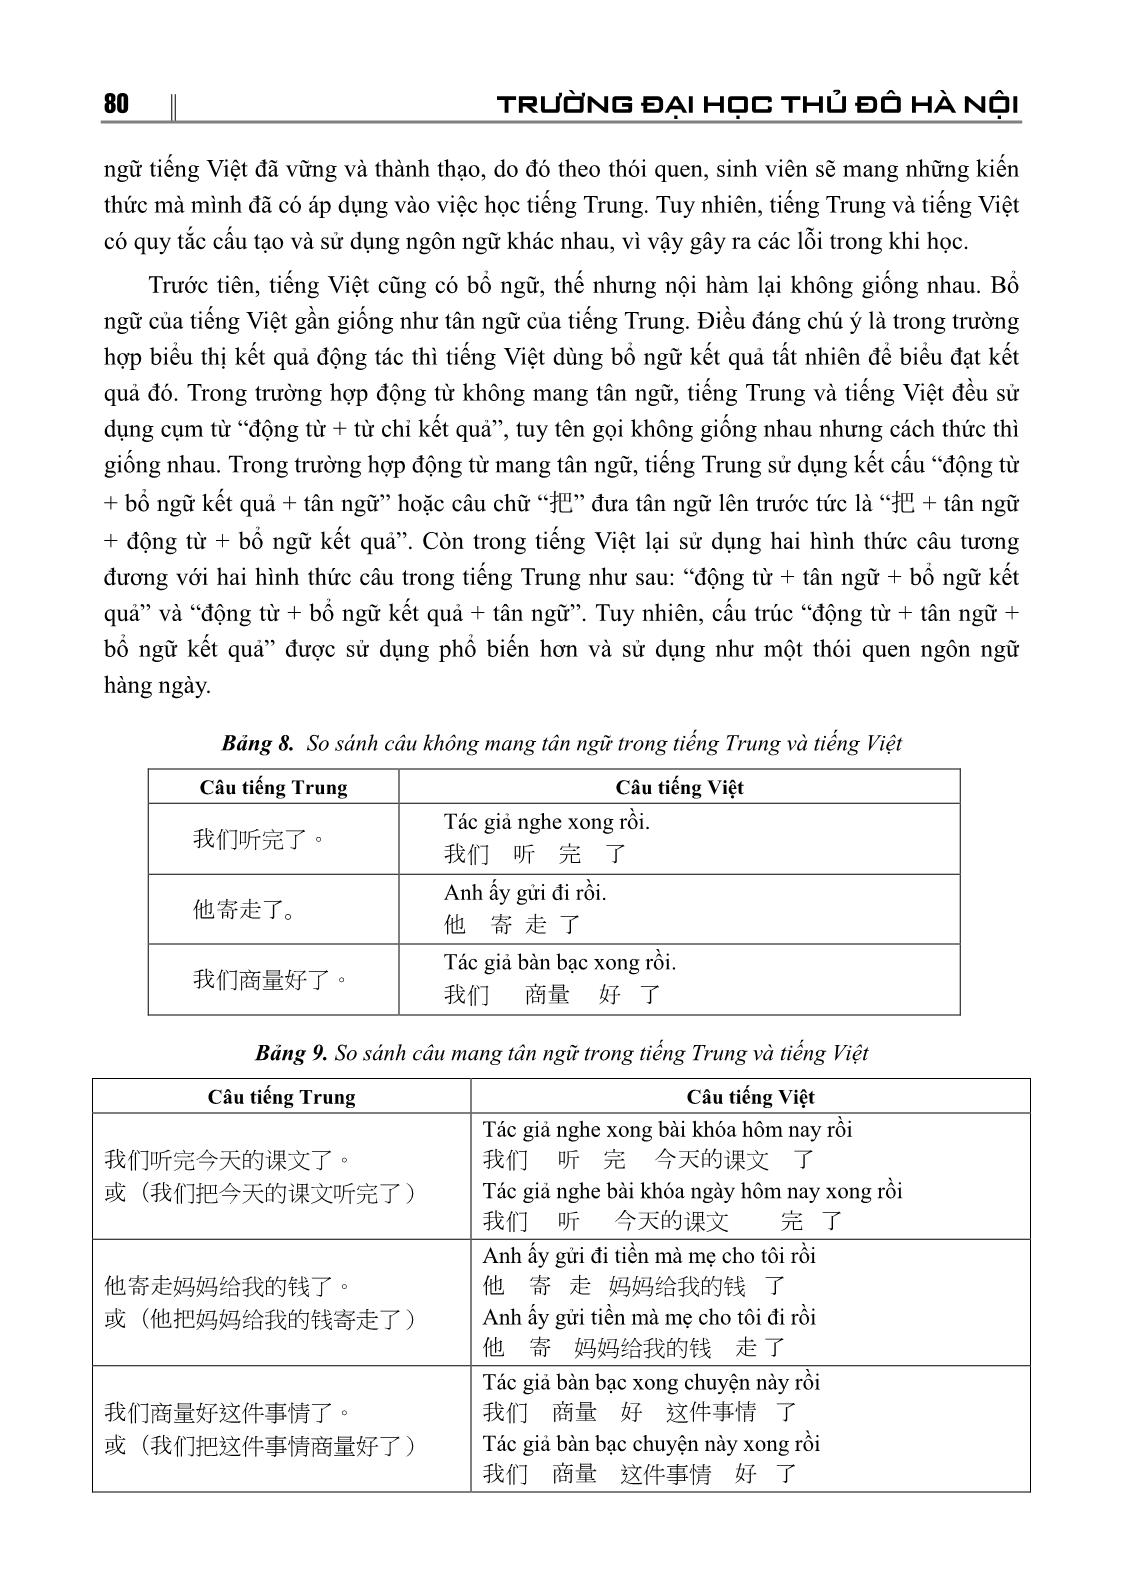 Những lỗi sai thường gặp của sinh viên chuyên ngành Tiếng Trung Quốc trường Đại học Sư phạm Hà Nội 2 trong sử dụng bổ ngữ kết quả trang 7